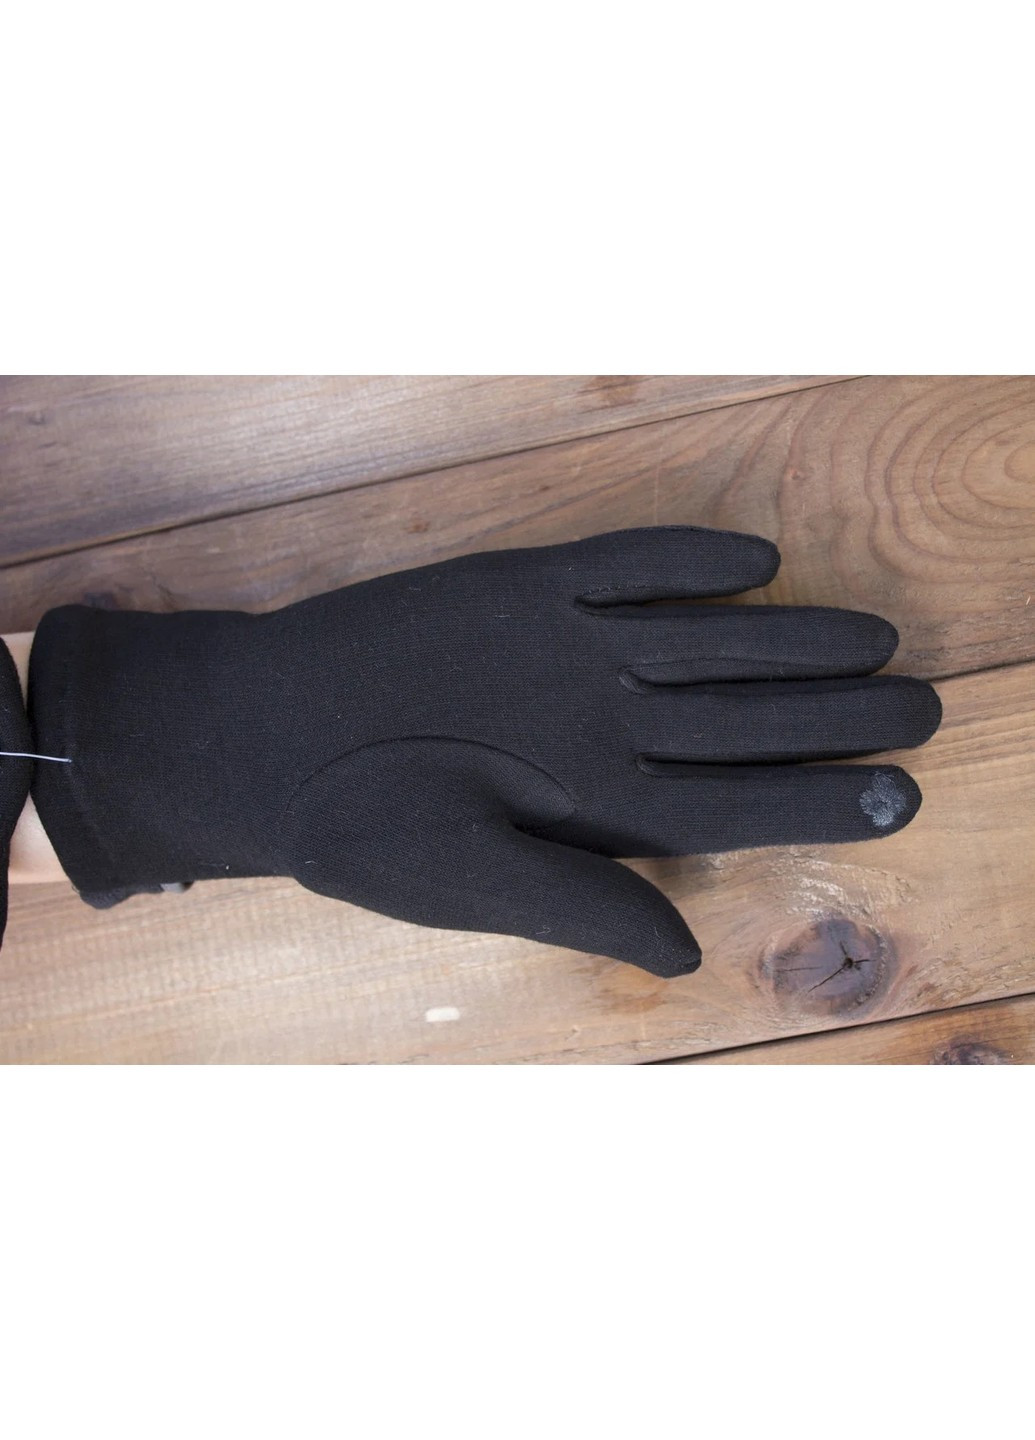 Рукавички сенсорні жіночі чорні трикотажні одяг 1805-5s2 м BR-S (261771529)